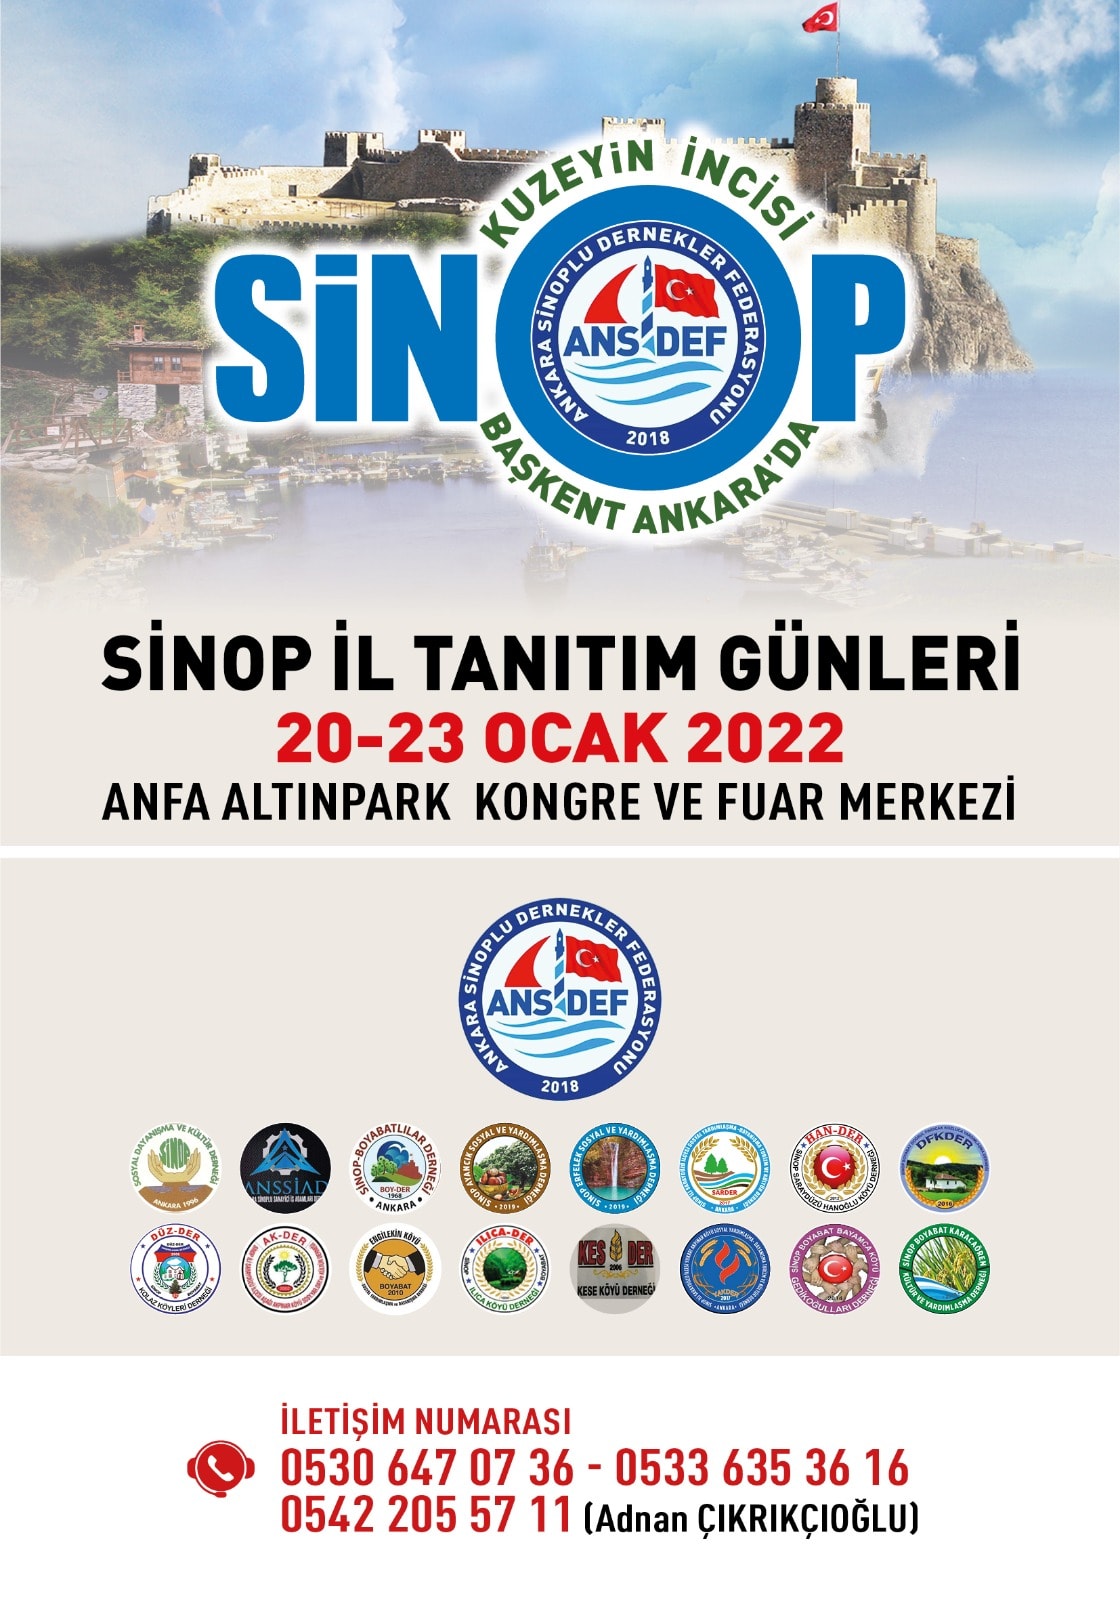 Sinop Tanıtım Günleri 20-23 Ocak 2022 Ankara Altınpark'ta